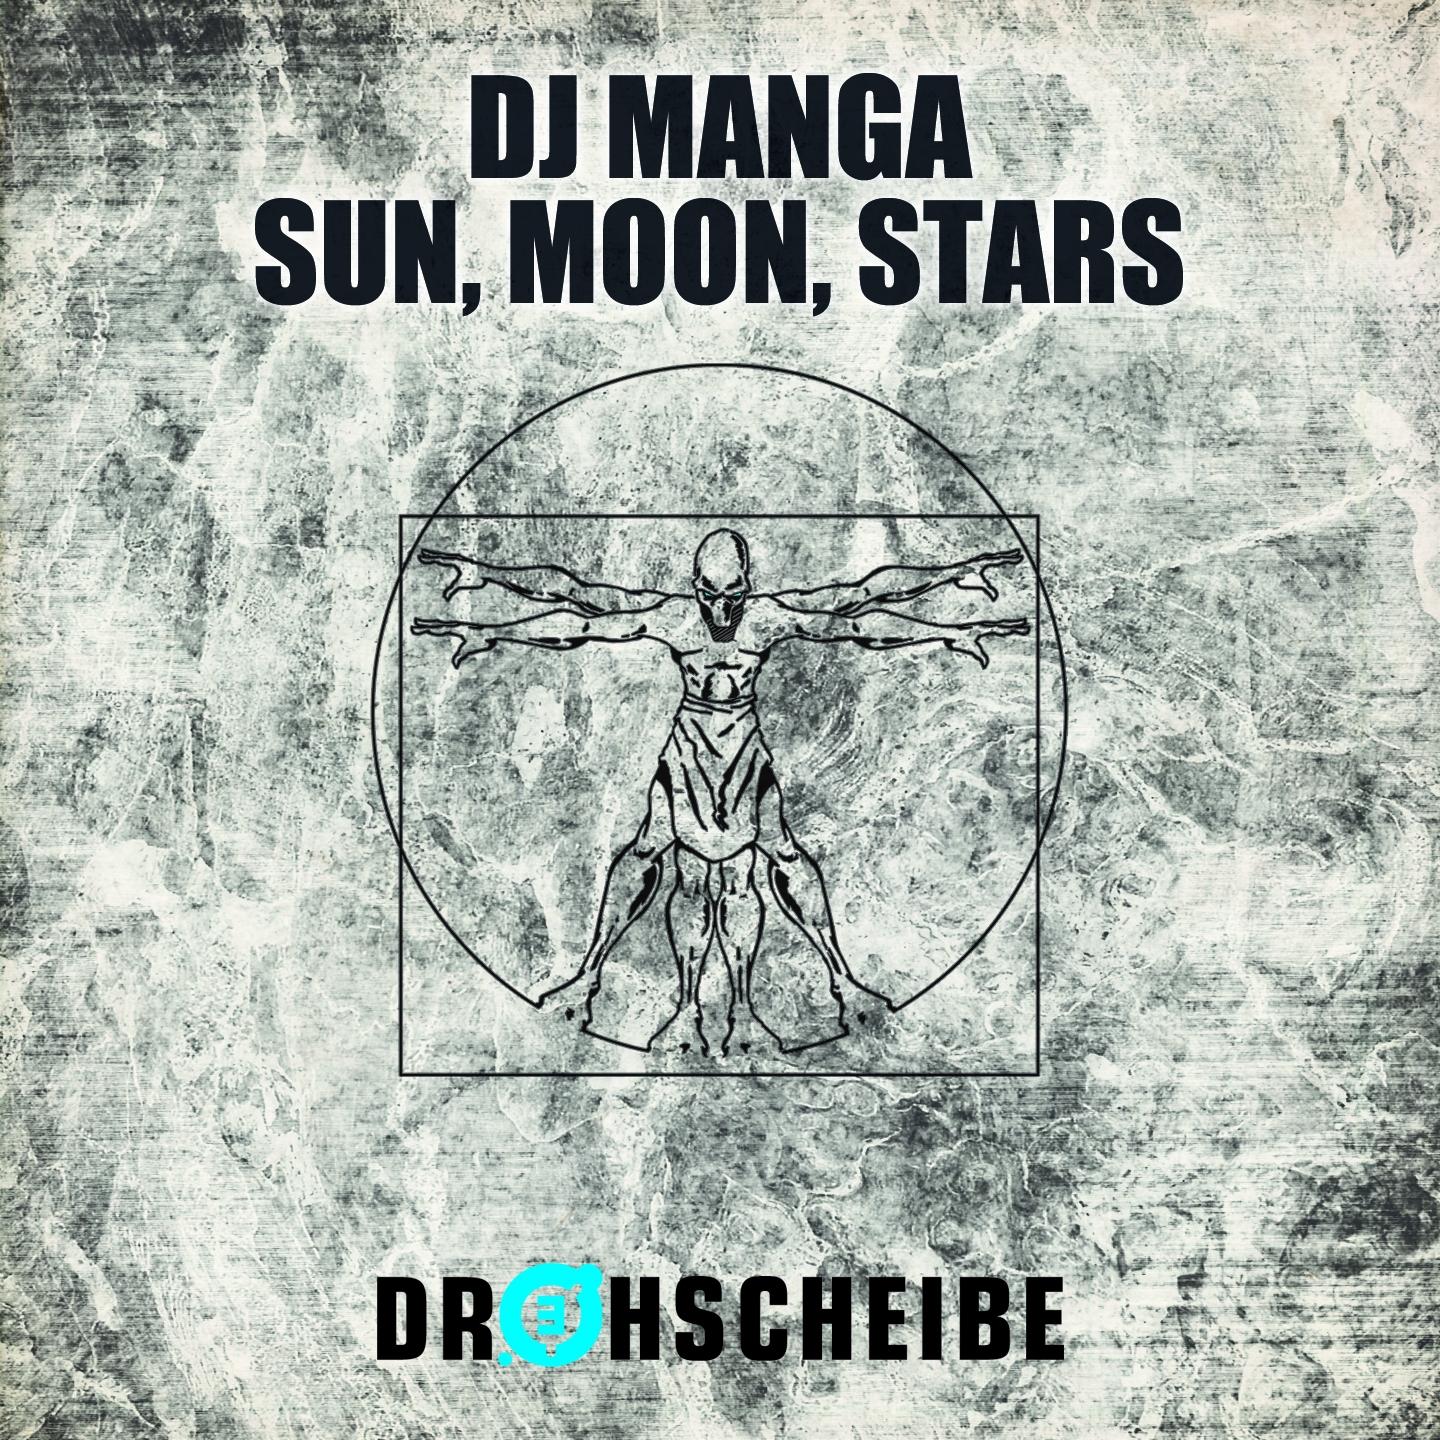 Sun, Moon, Stars (Alarm Mix)